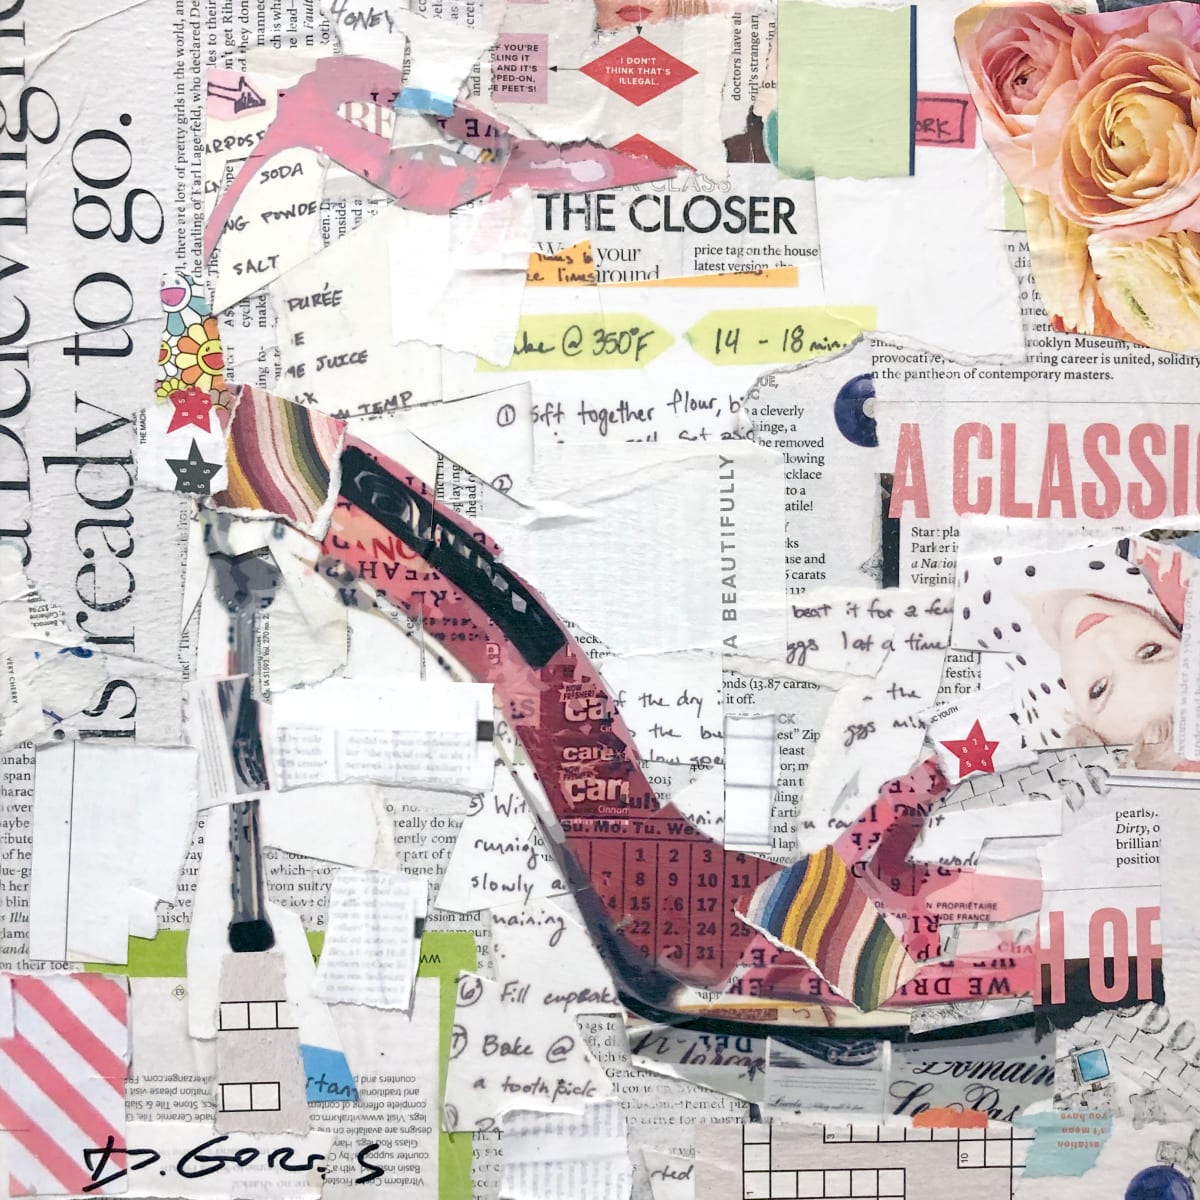 The Closer by Derek Gores by Derek Gores Gallery 